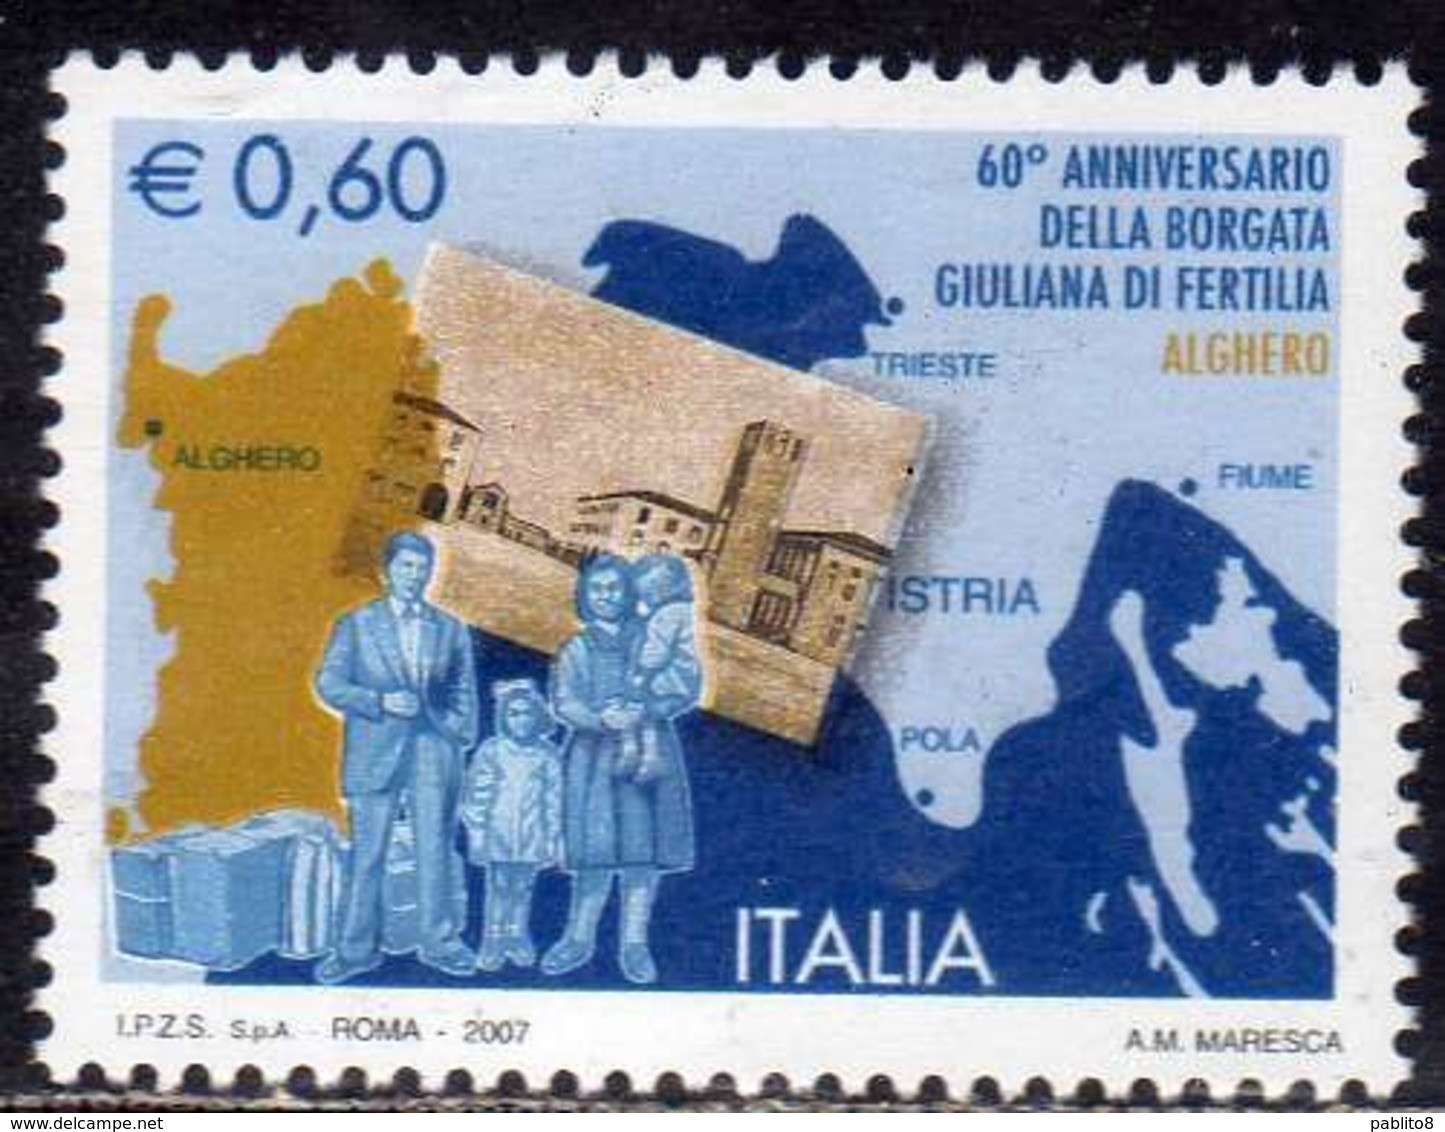 ITALIA REPUBBLICA ITALY REPUBLIC 2007 BORGATA GIULIANA DI FERTILIA DI ALGHERO € 0,60 MNH - 2001-10: Mint/hinged